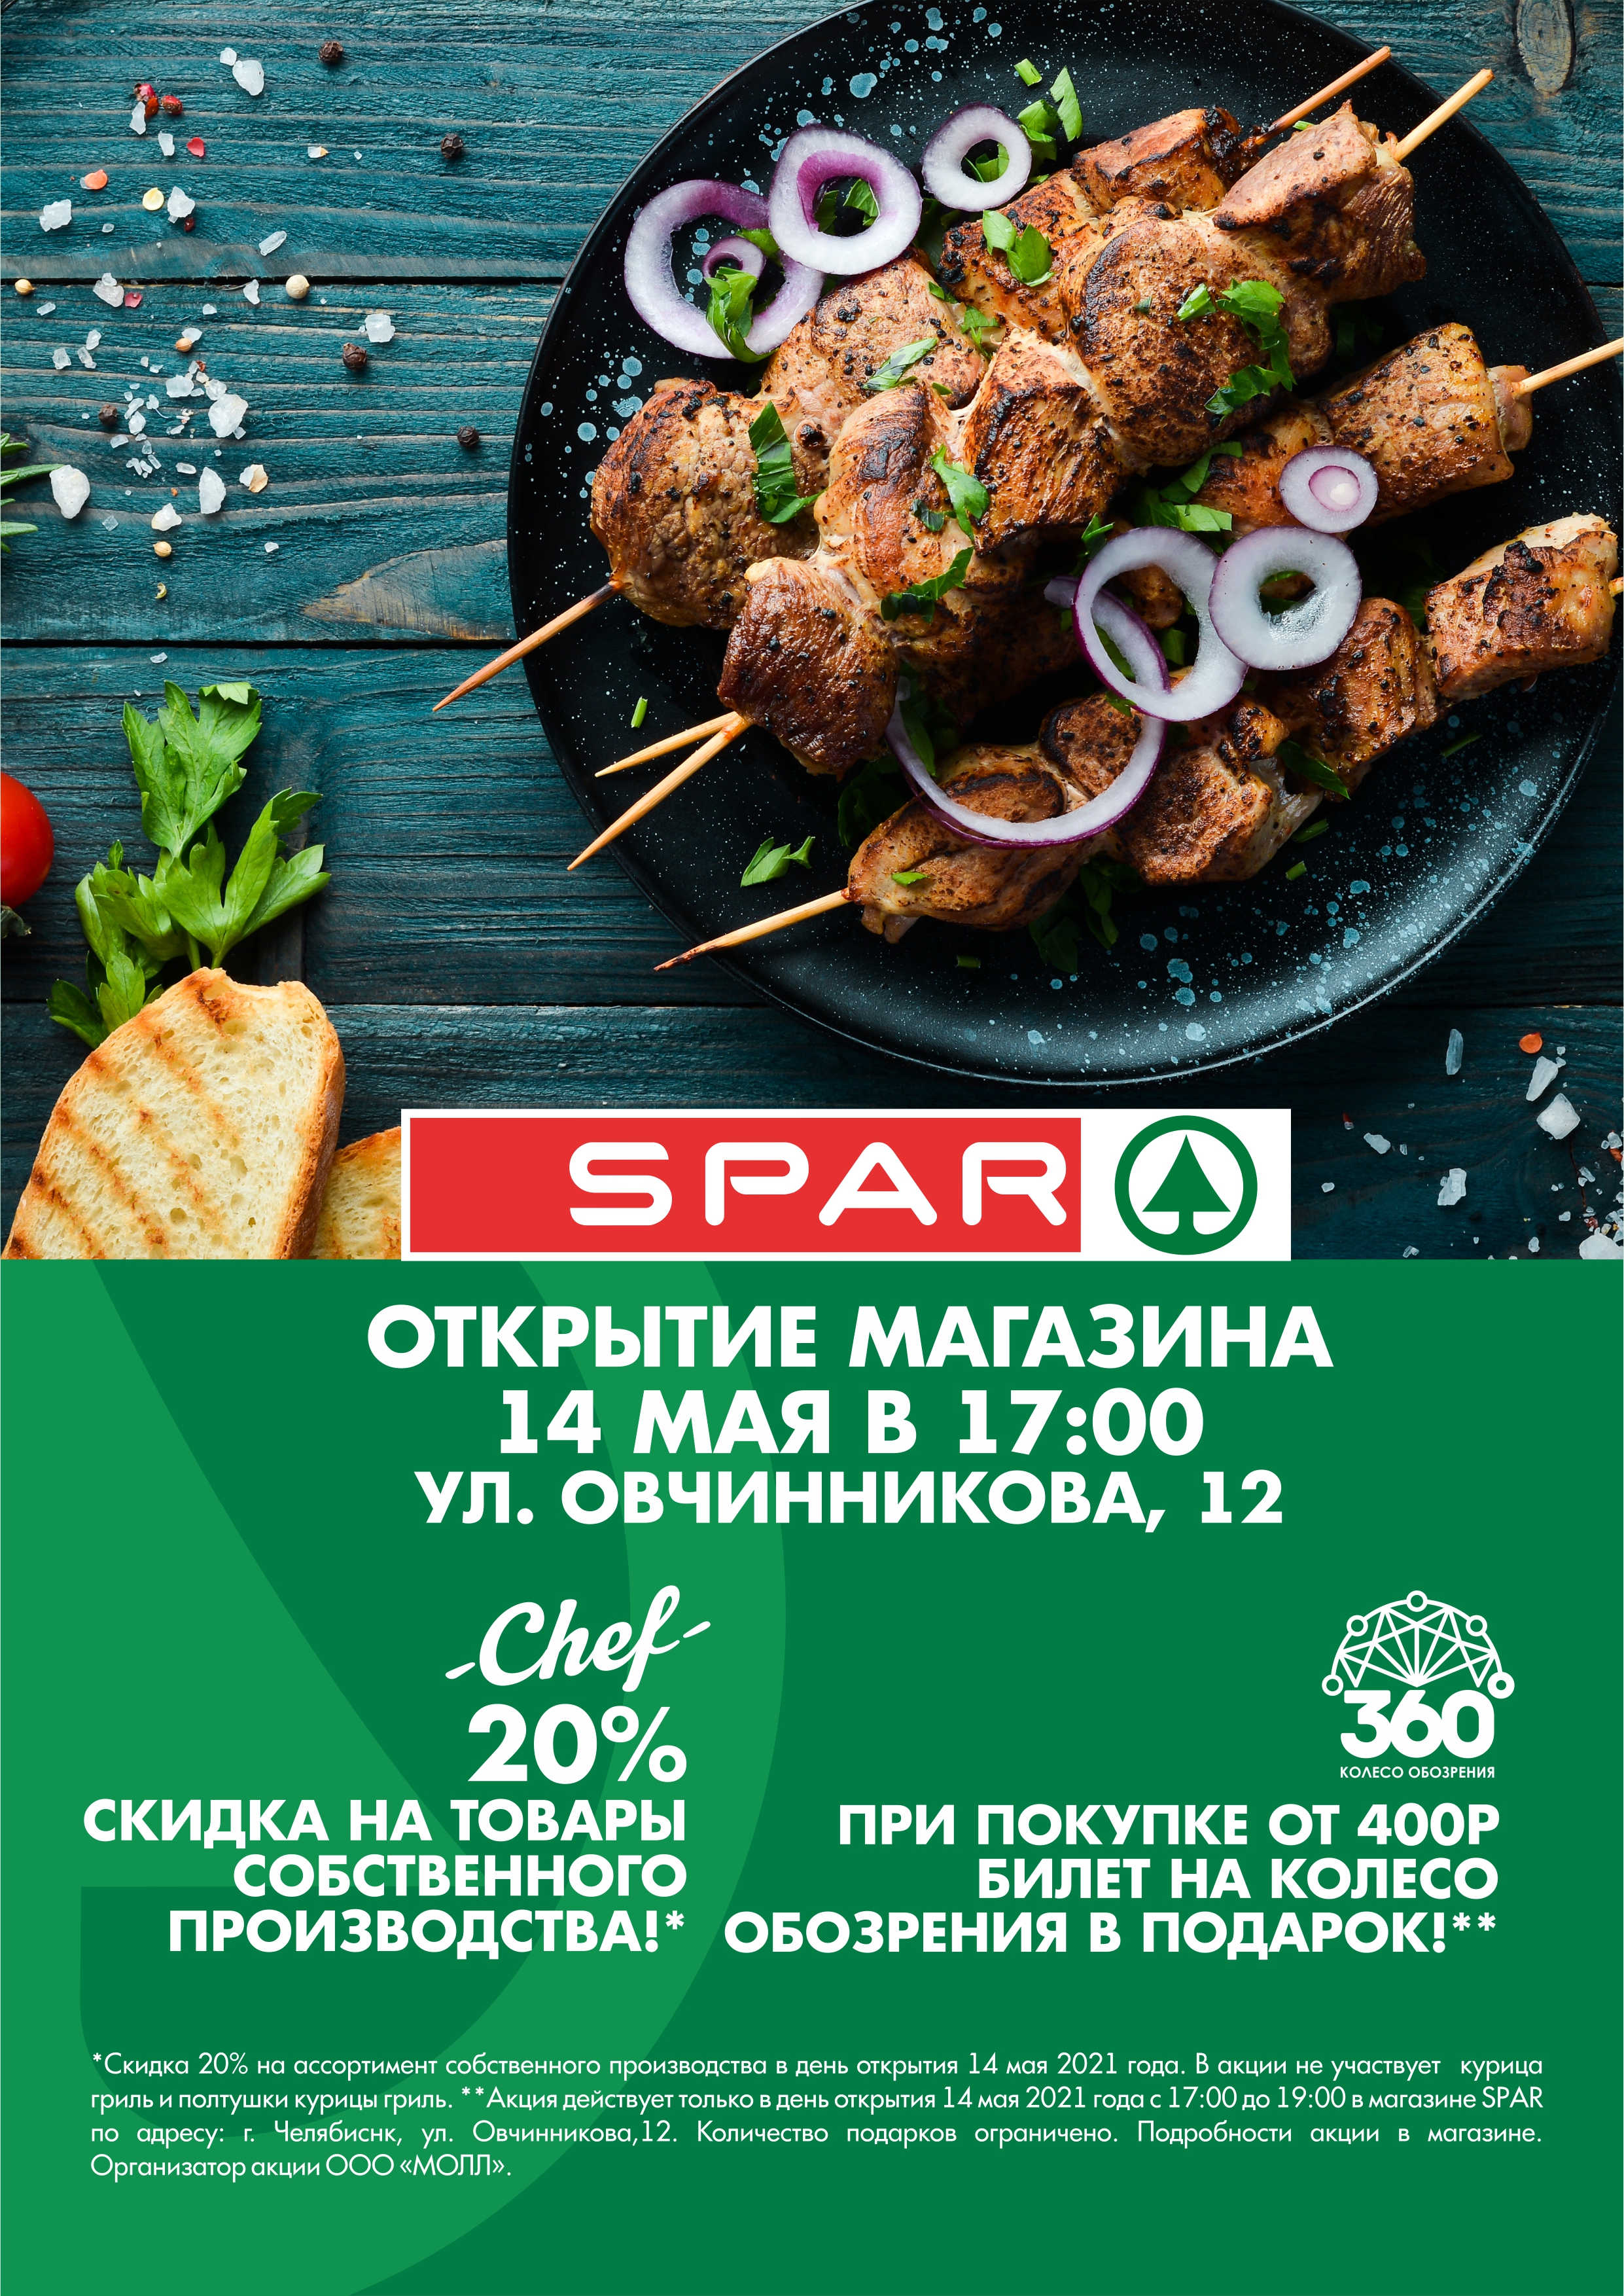 Открытие супермаркета SPAR в Челябинске! ⠀